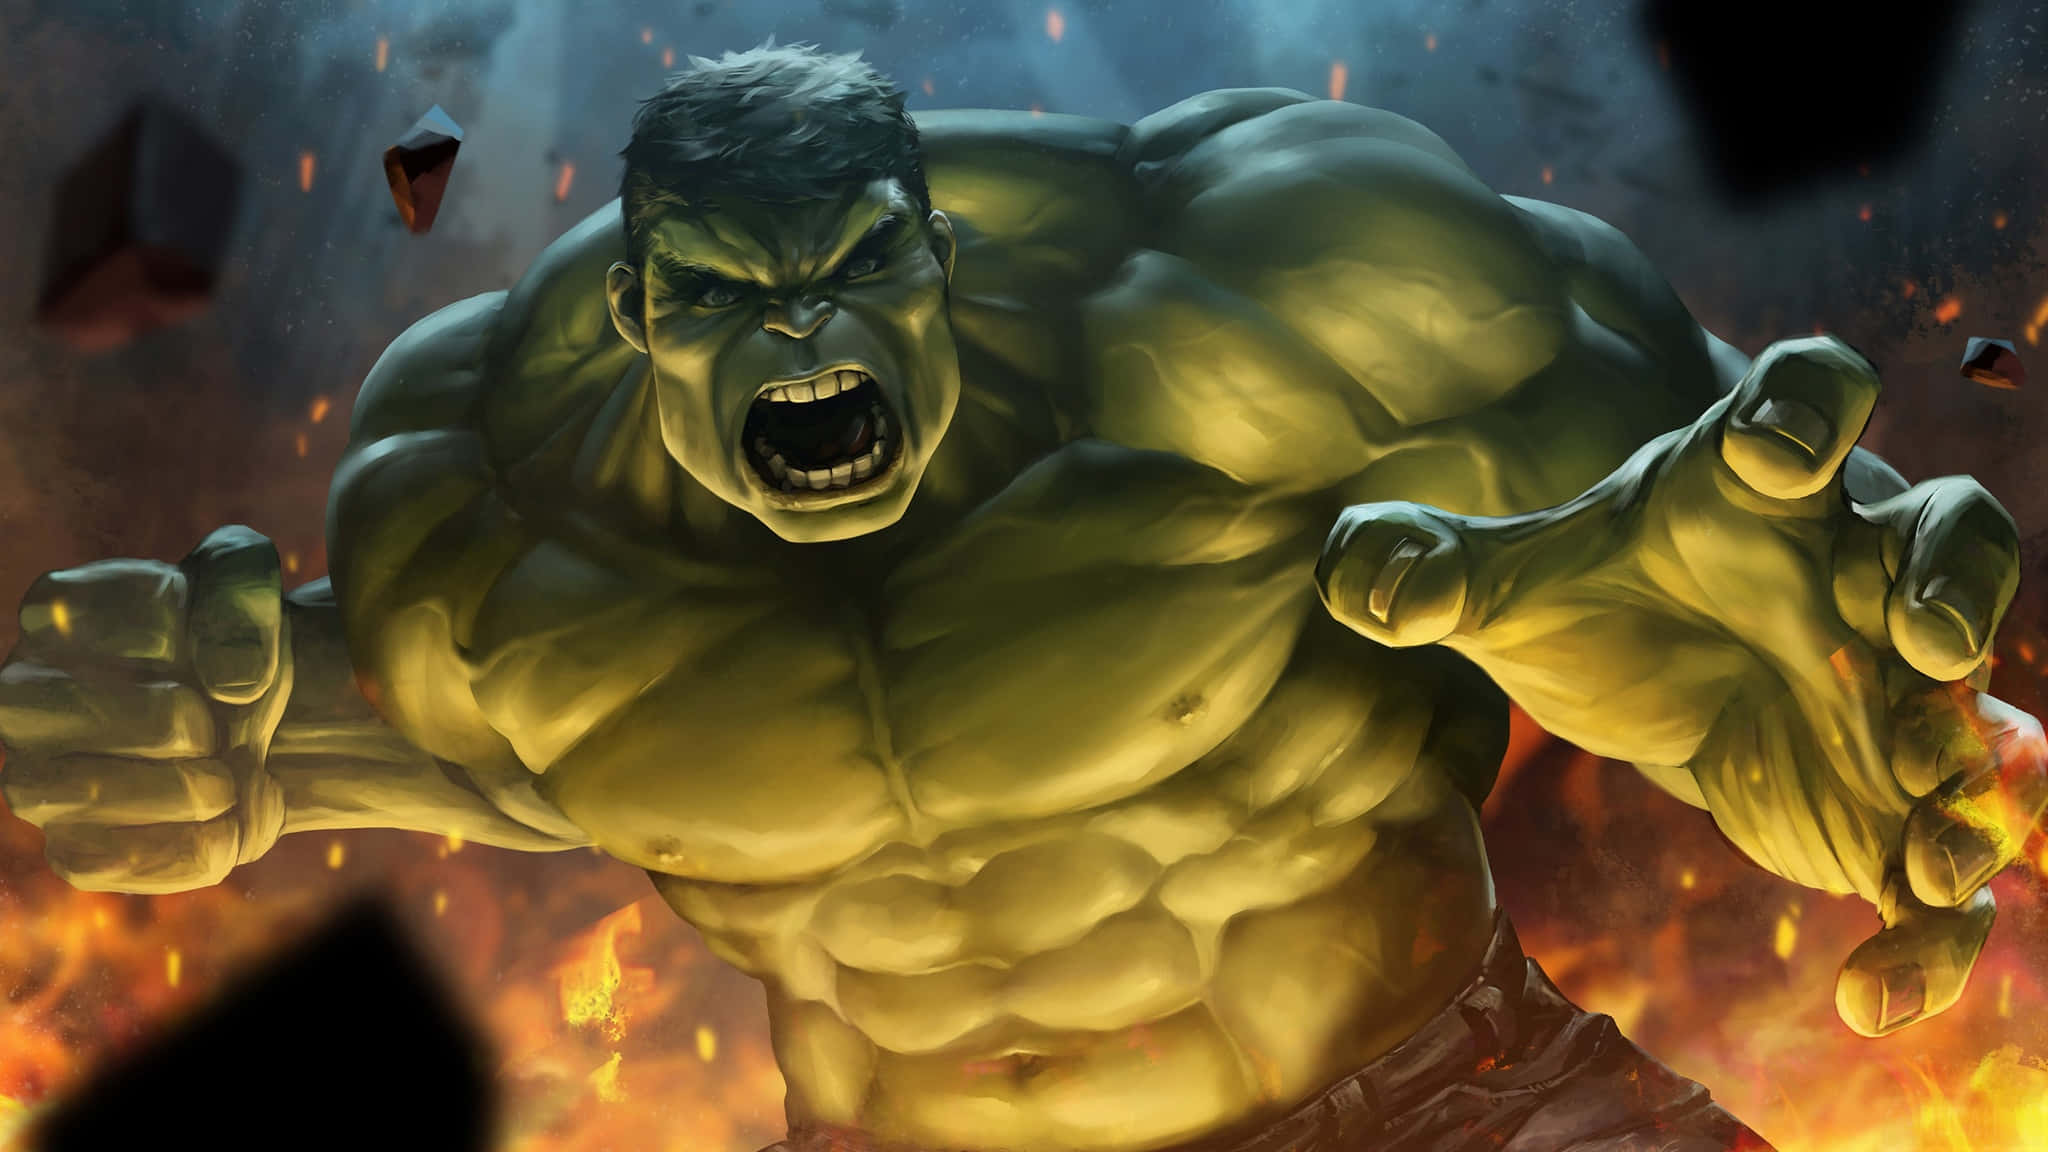 Denutrolige Hulk Frigiver Sin Kraft